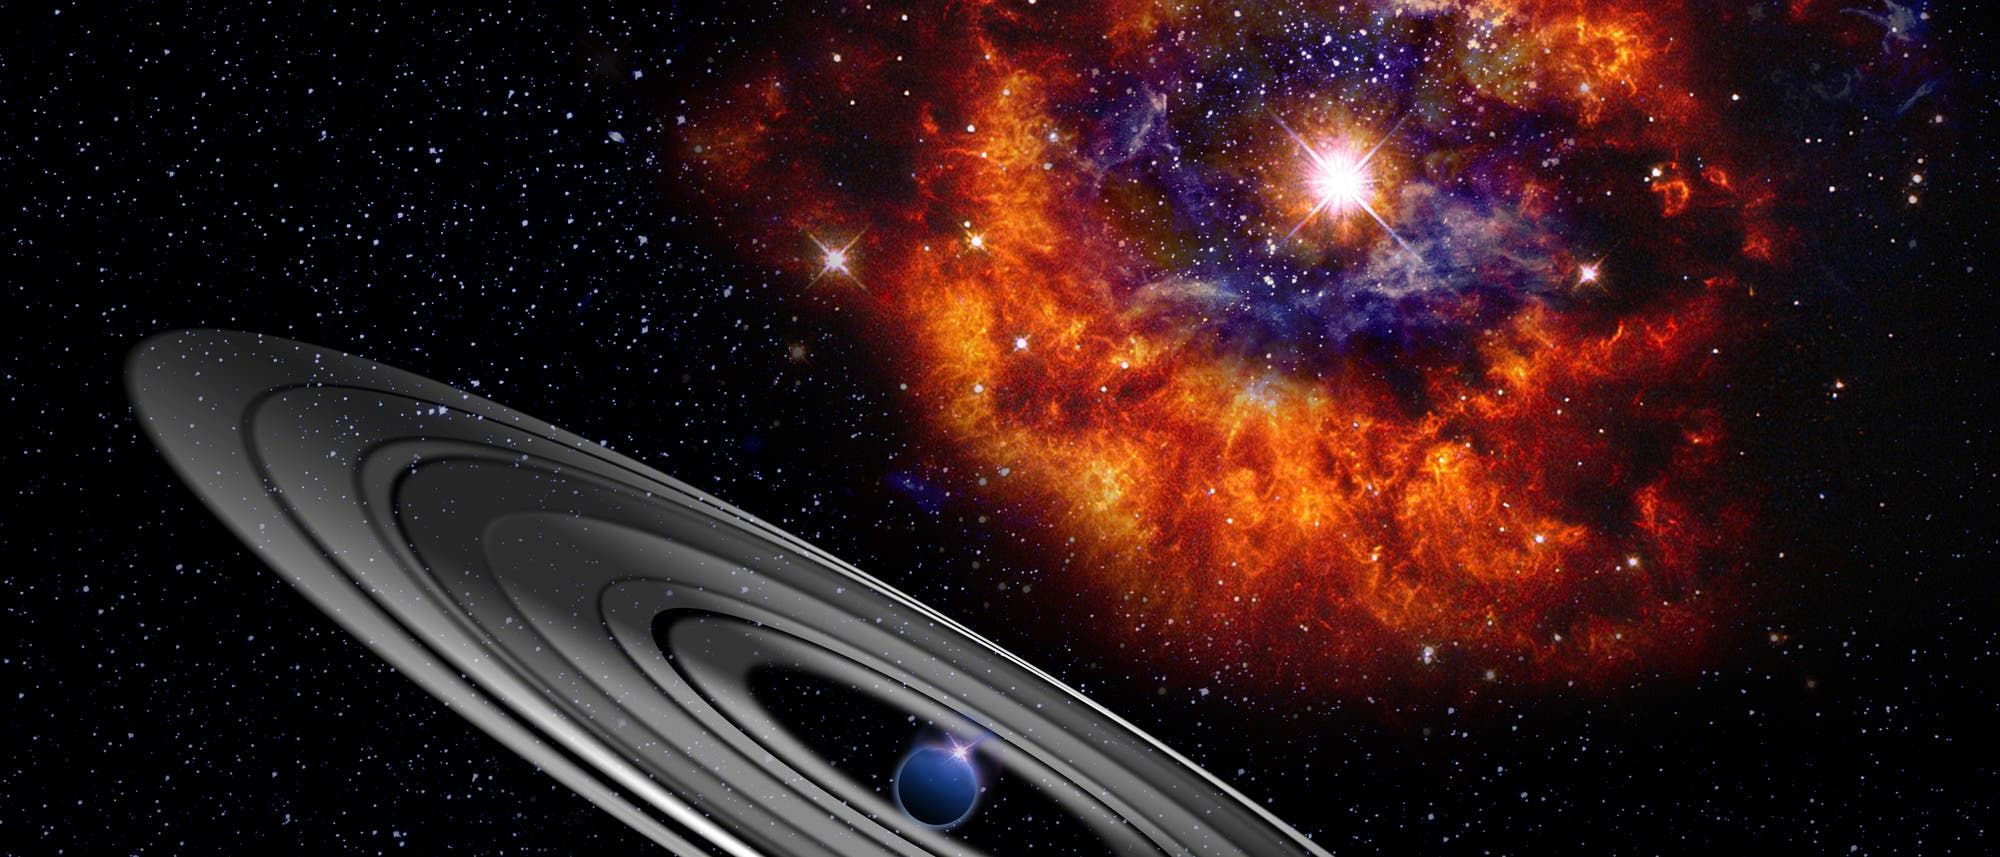 Der Exoplanet PDS 110 mit riesigem Ring (Künstlerische Darstellung)